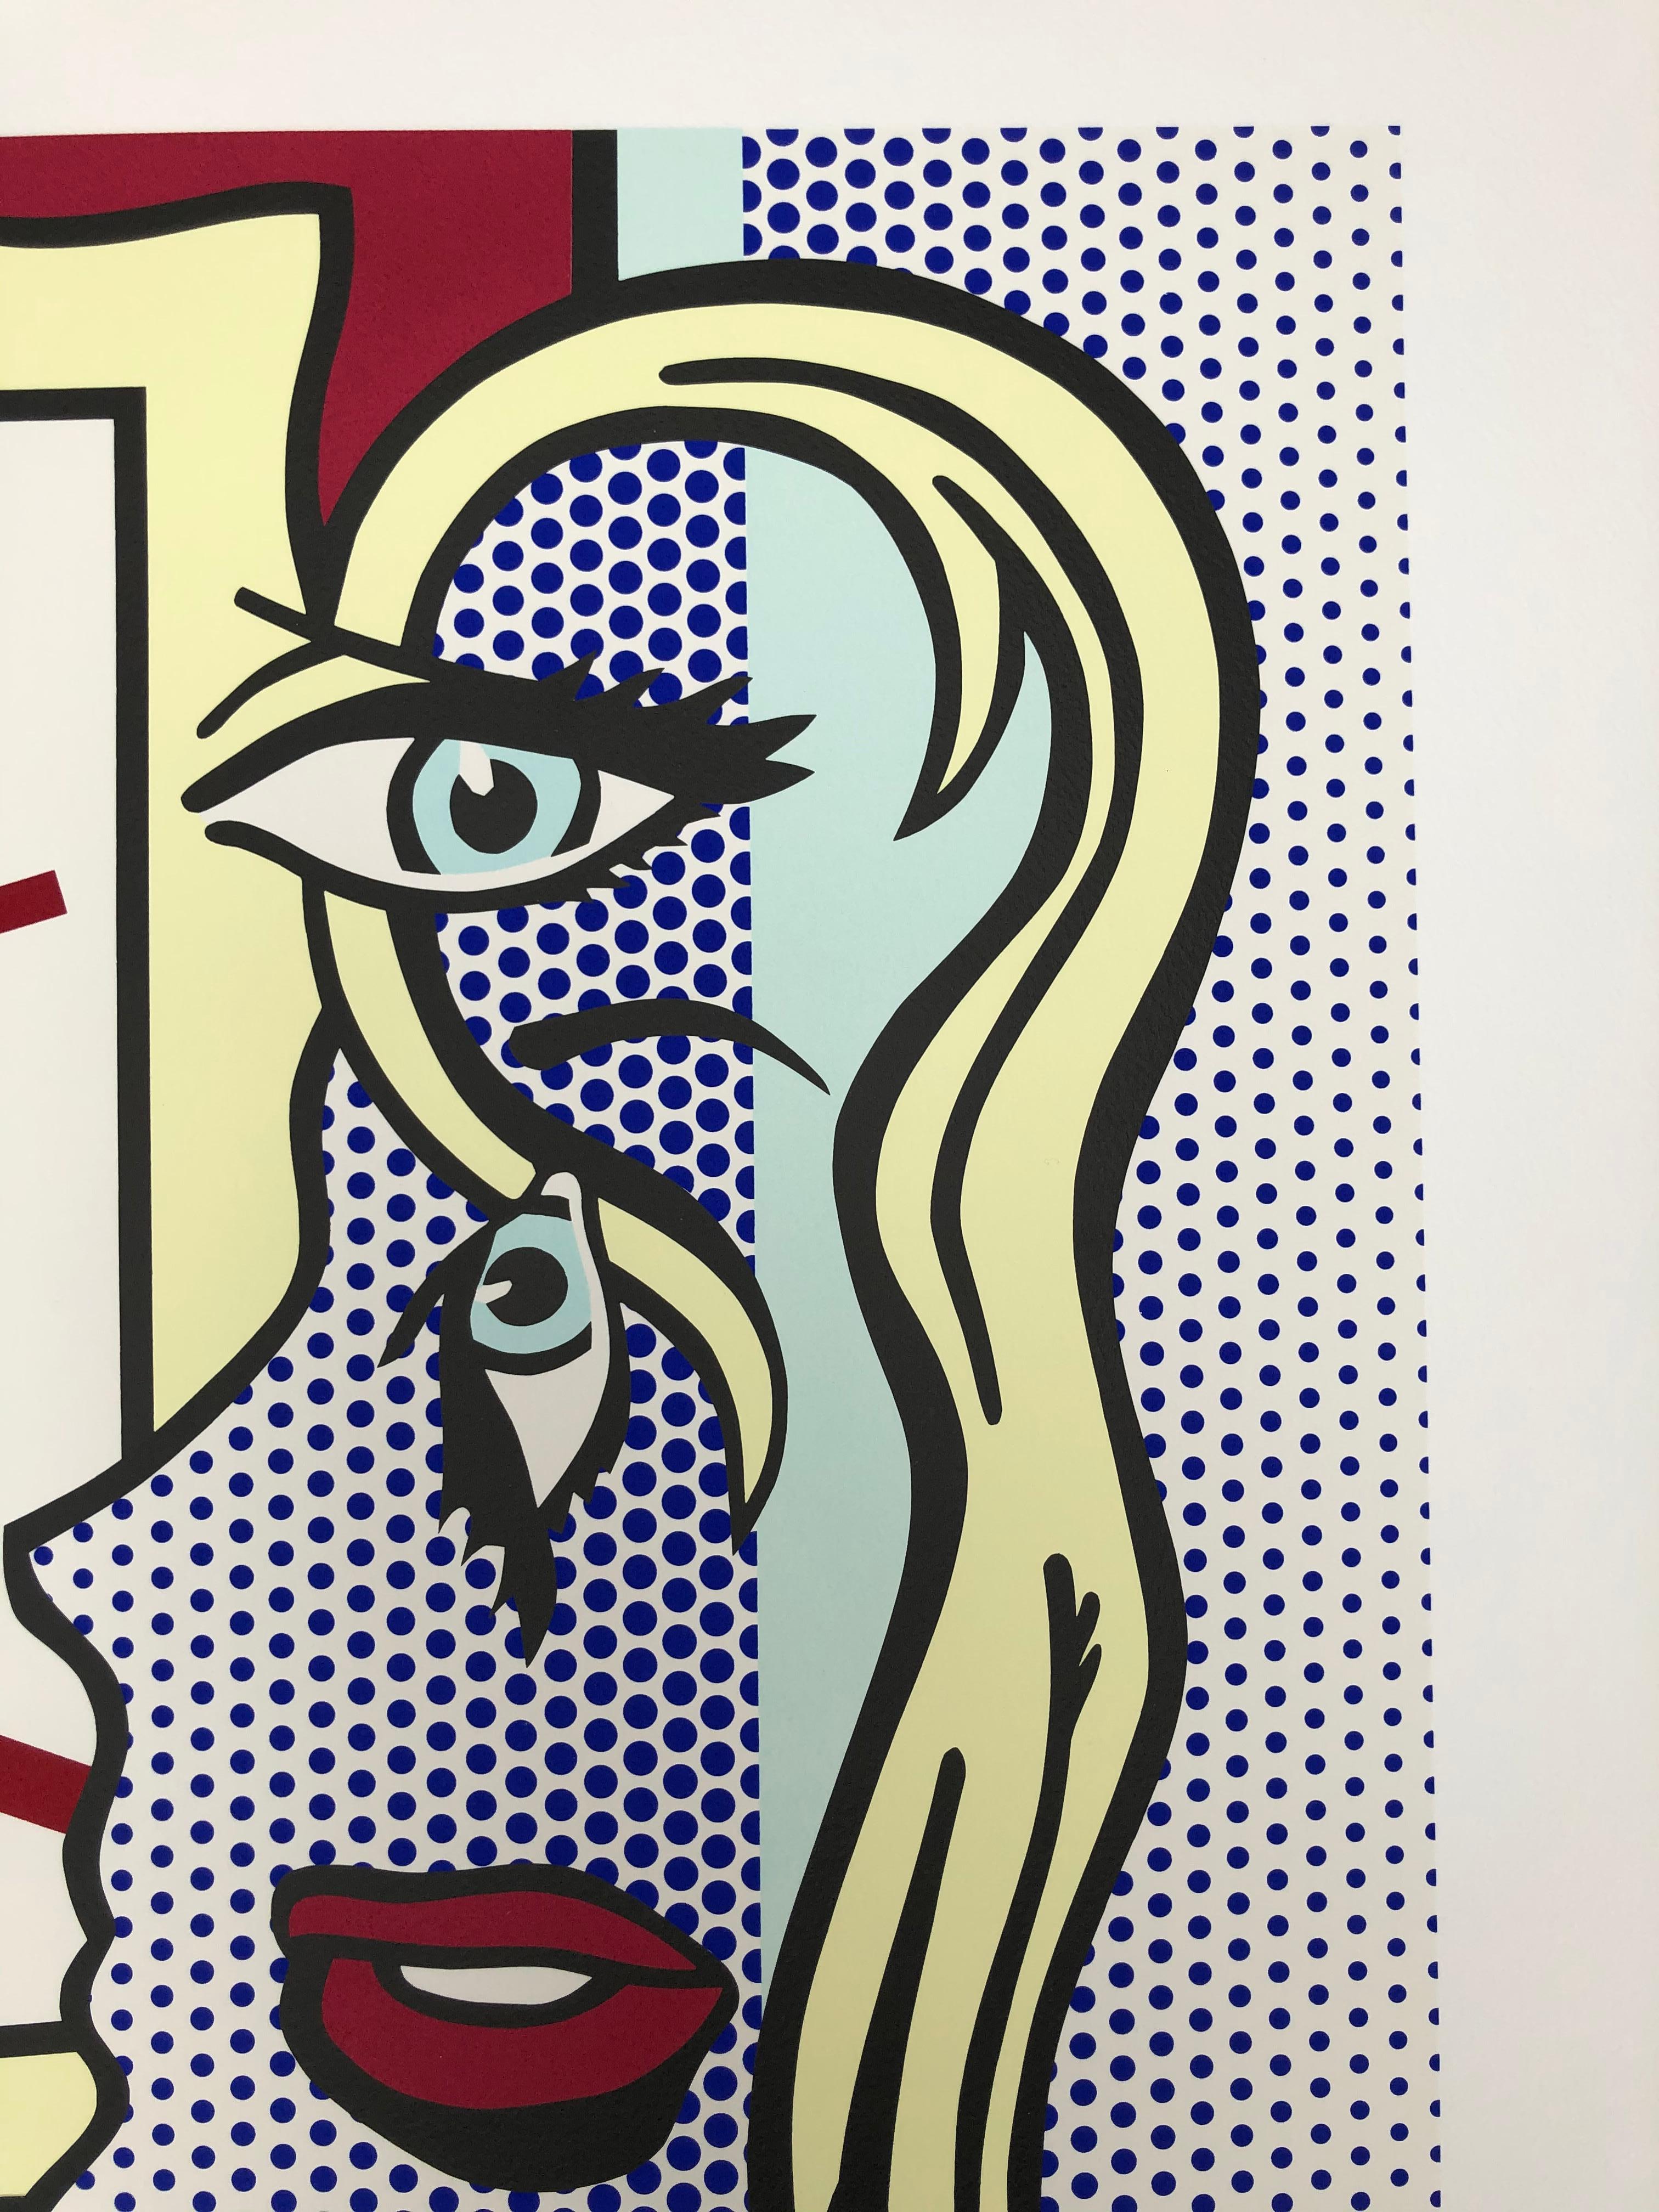 Art Critic - Contemporary Print by Roy Lichtenstein